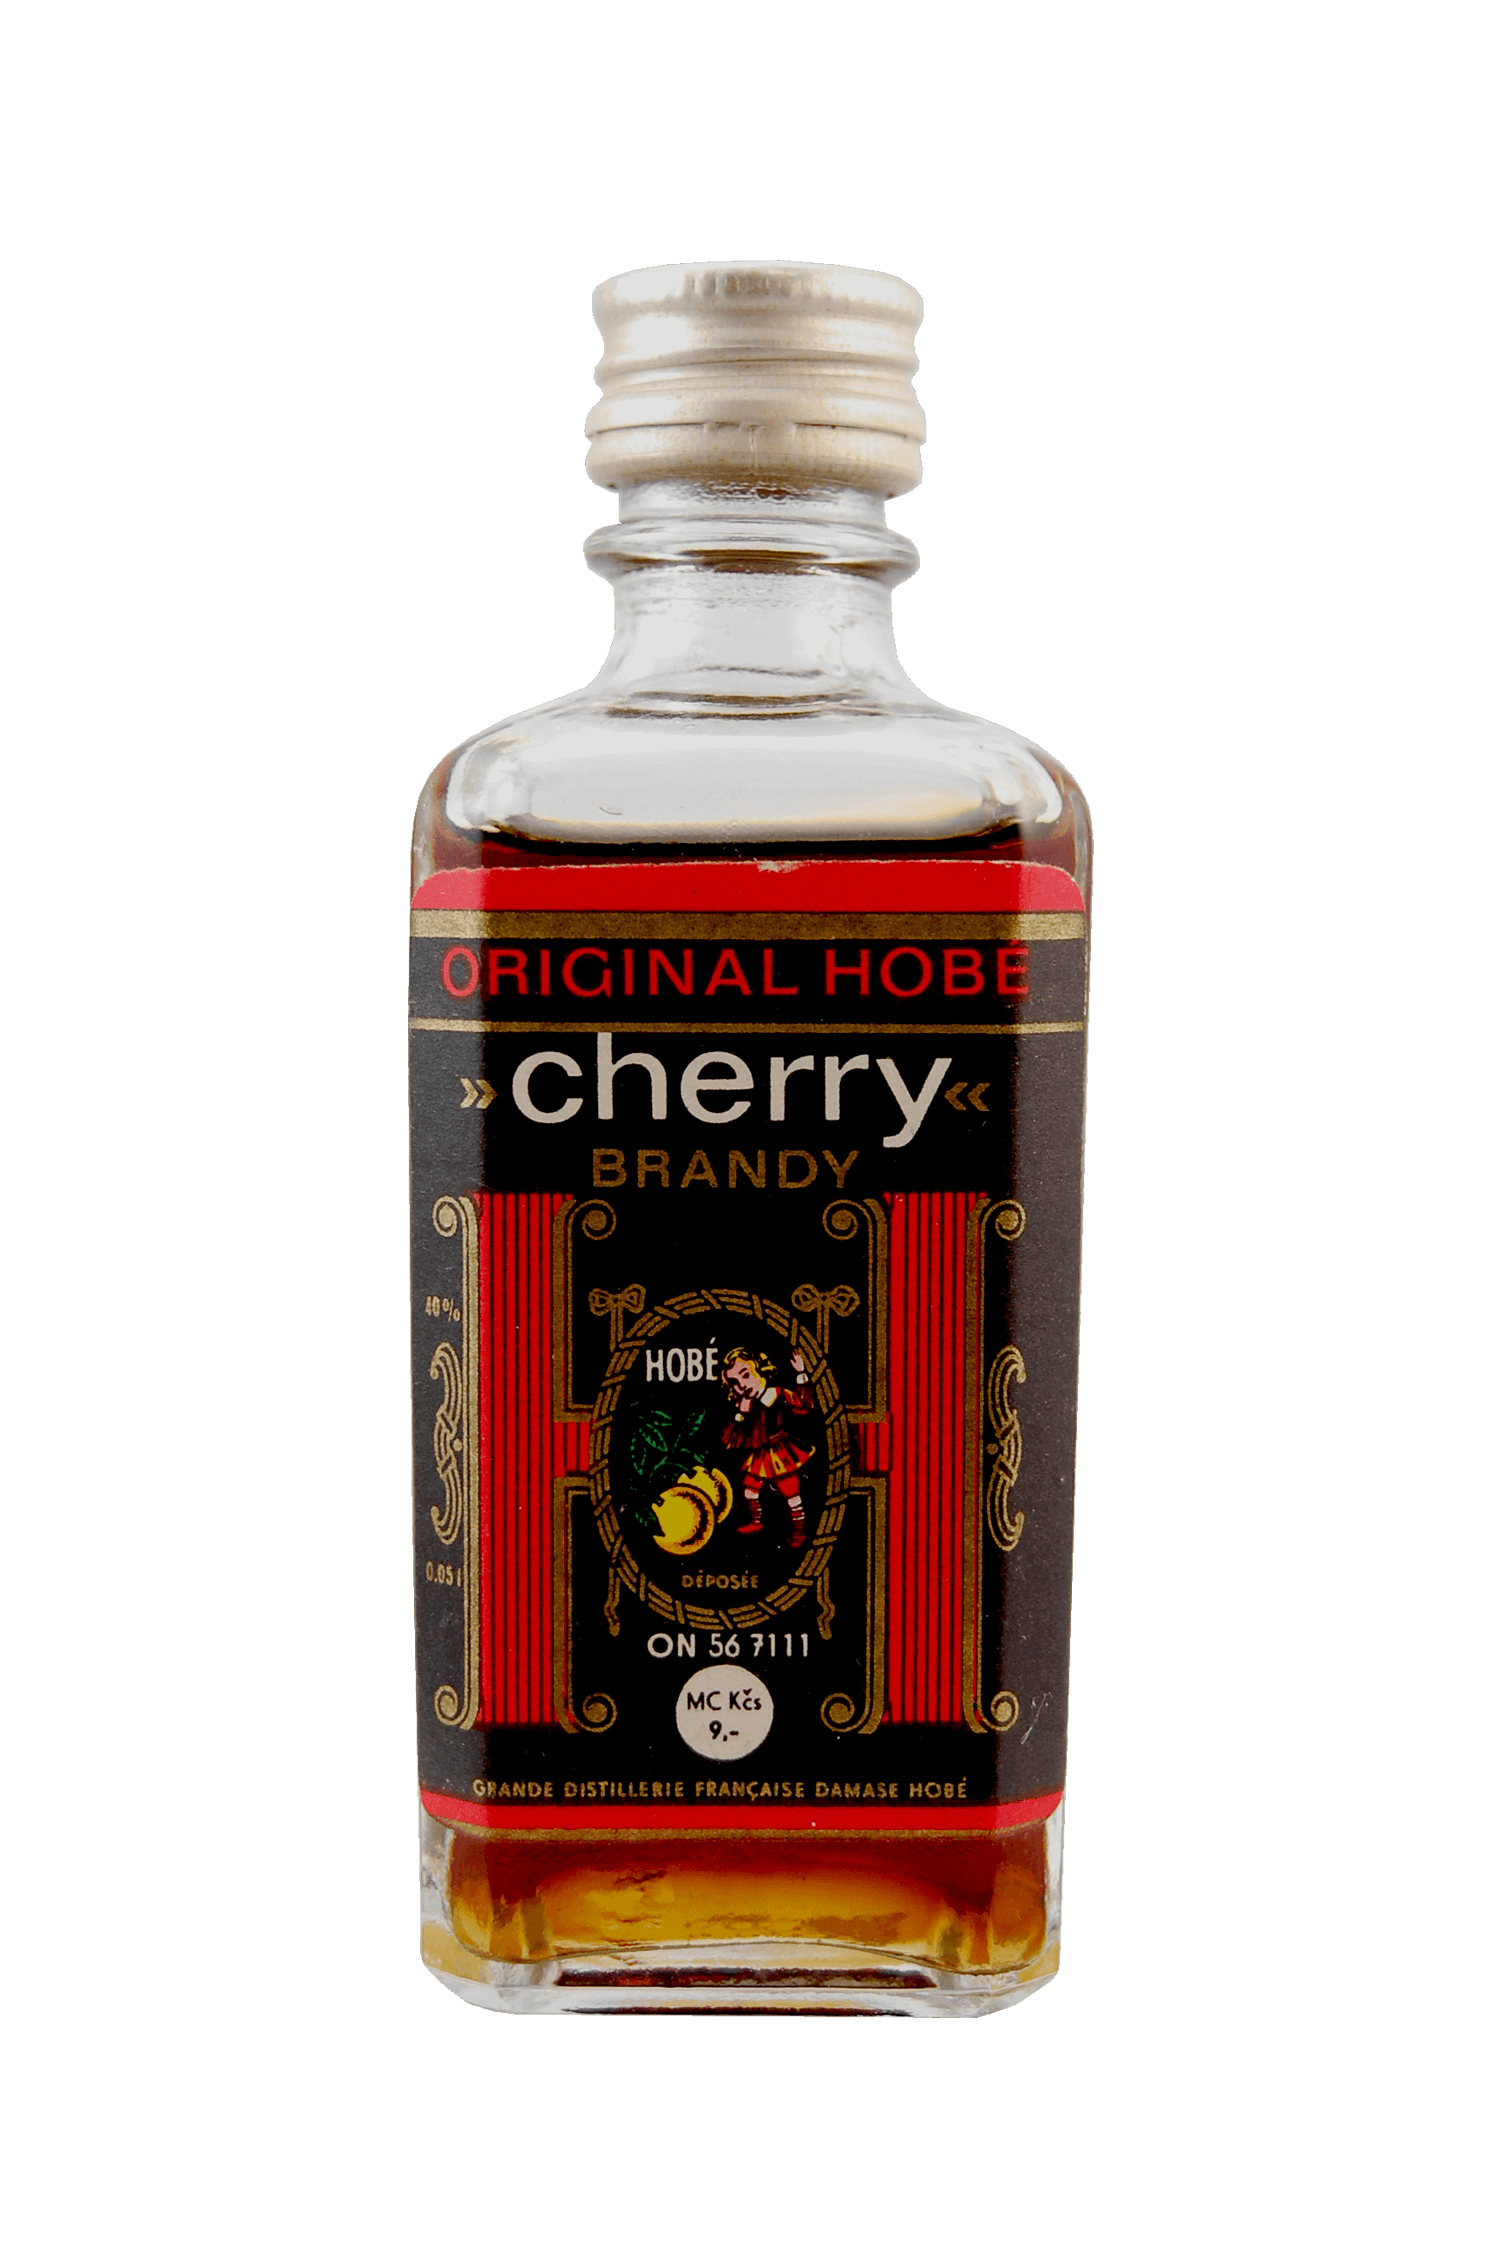 Hobé Cherry Brandy